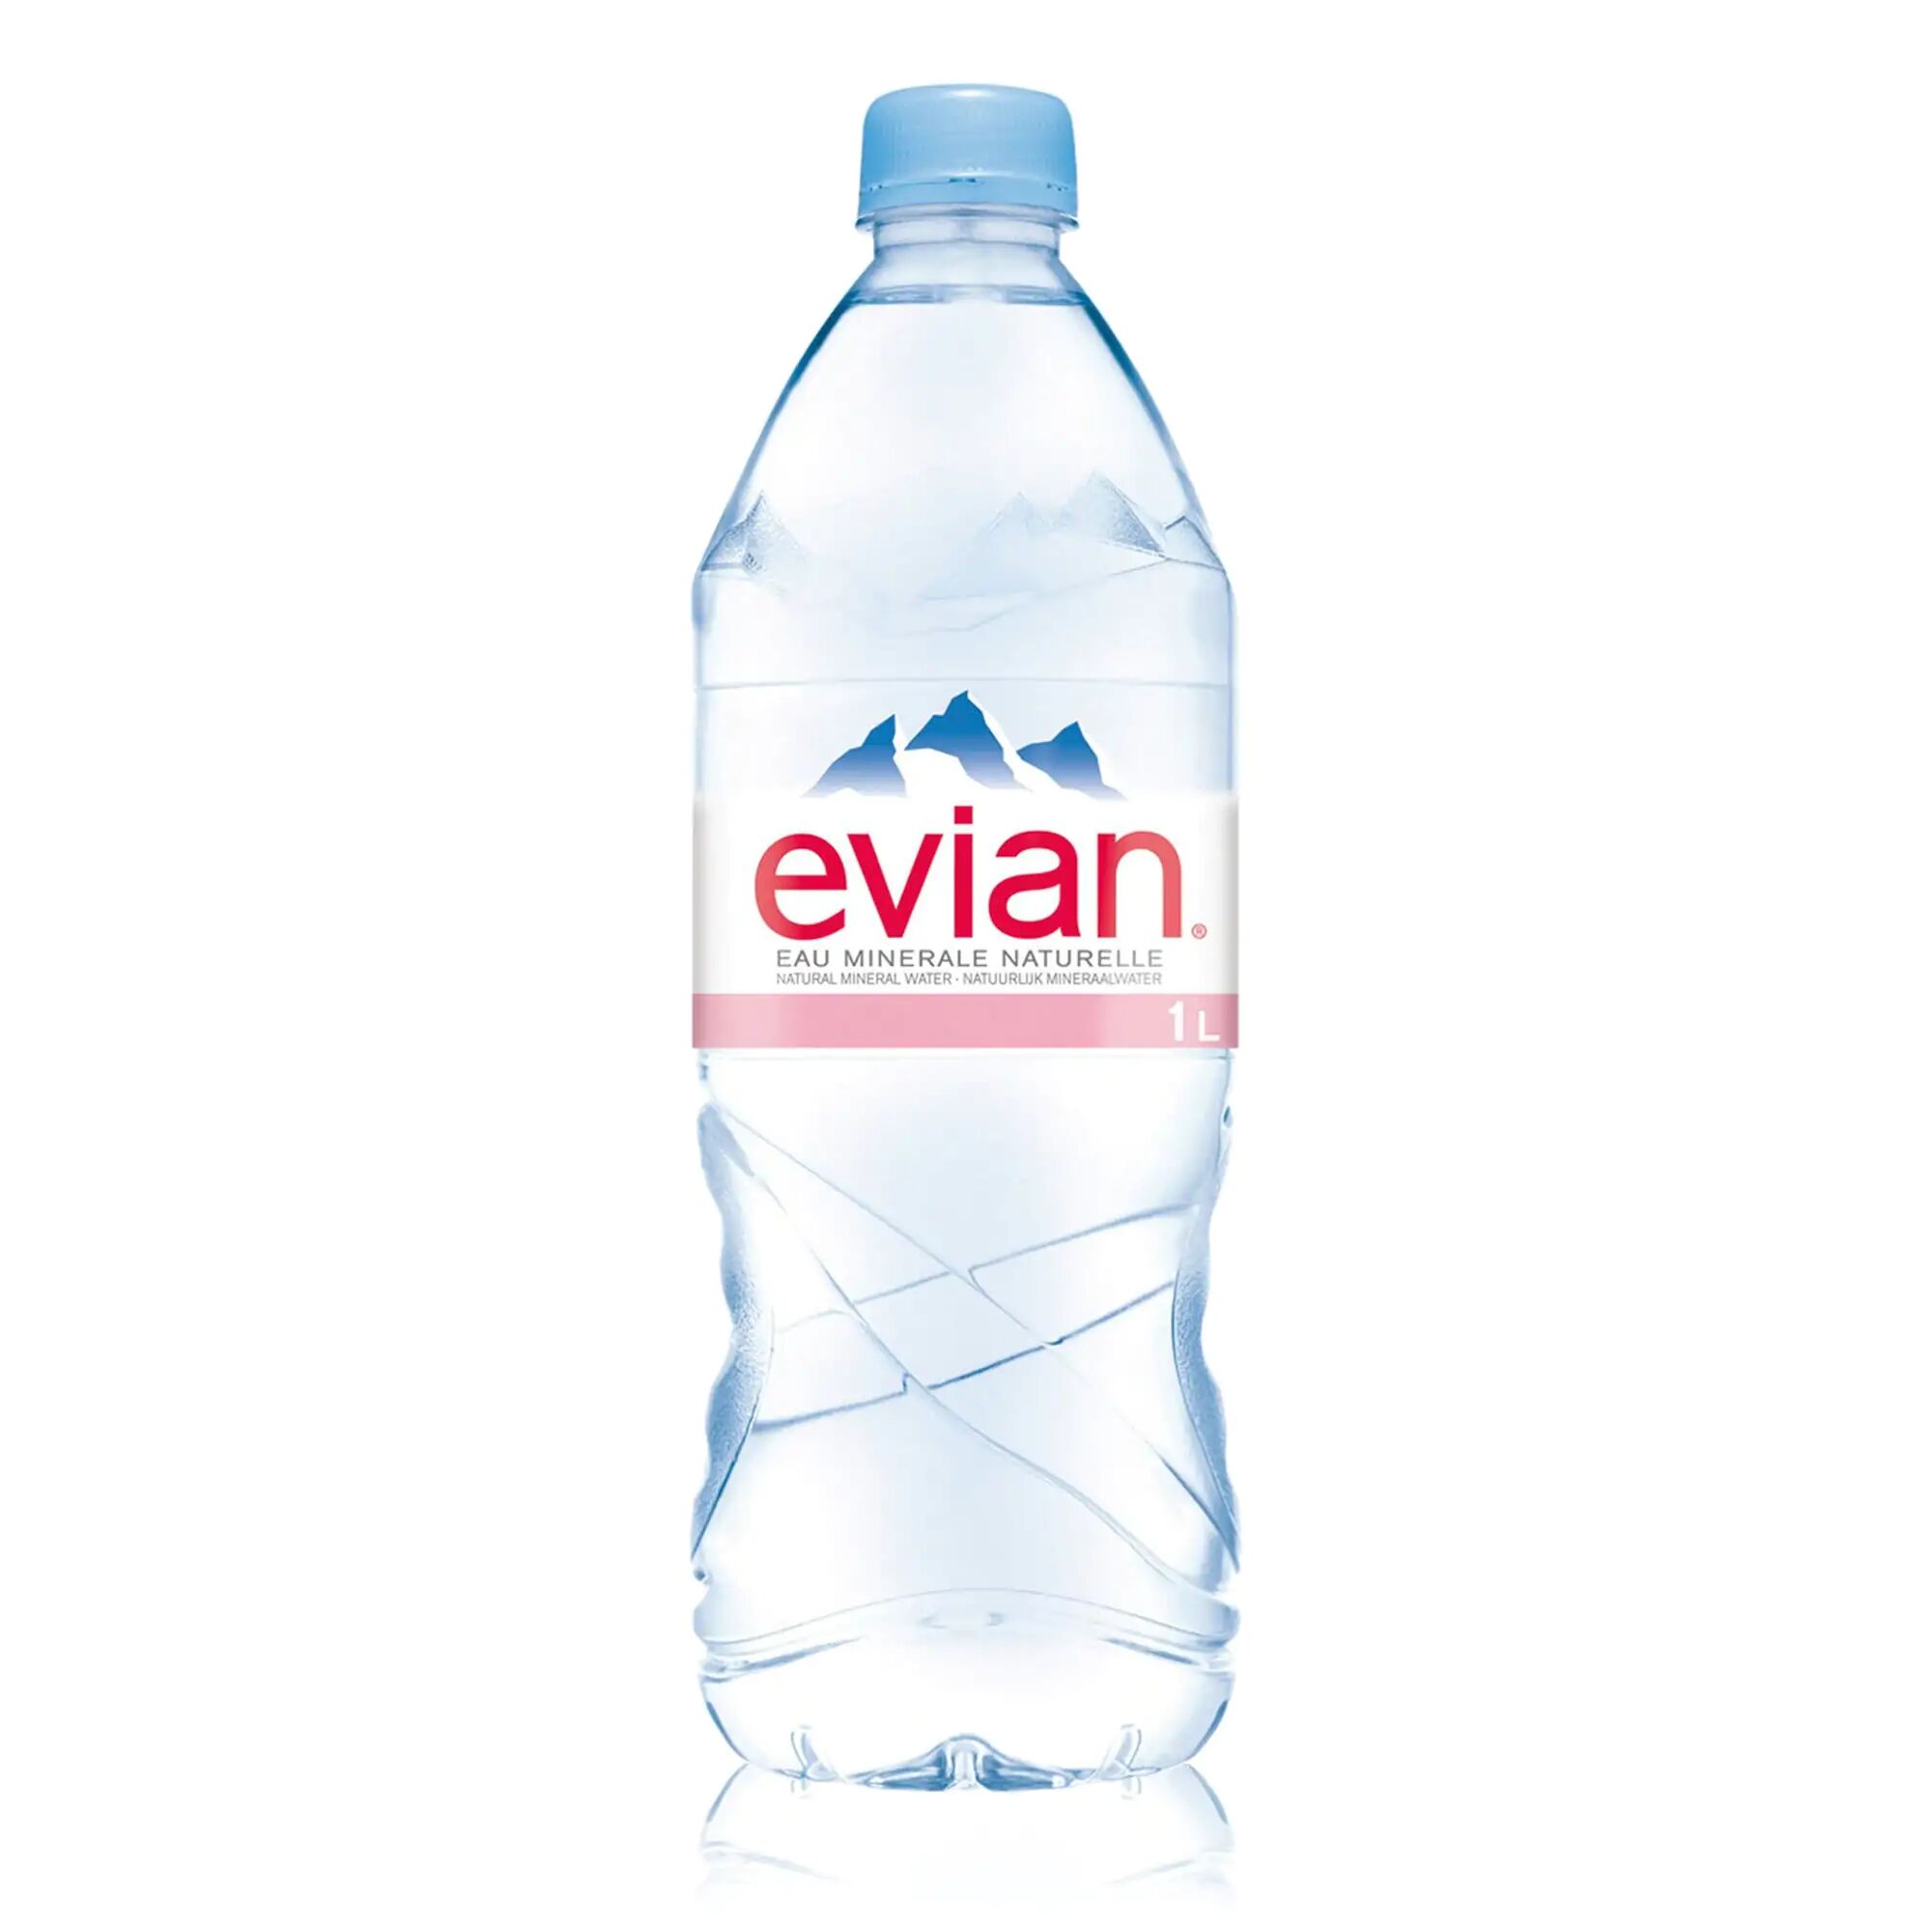 Laciviltadelbere Acqua Evian confezione da 6 bott. 1L Evian